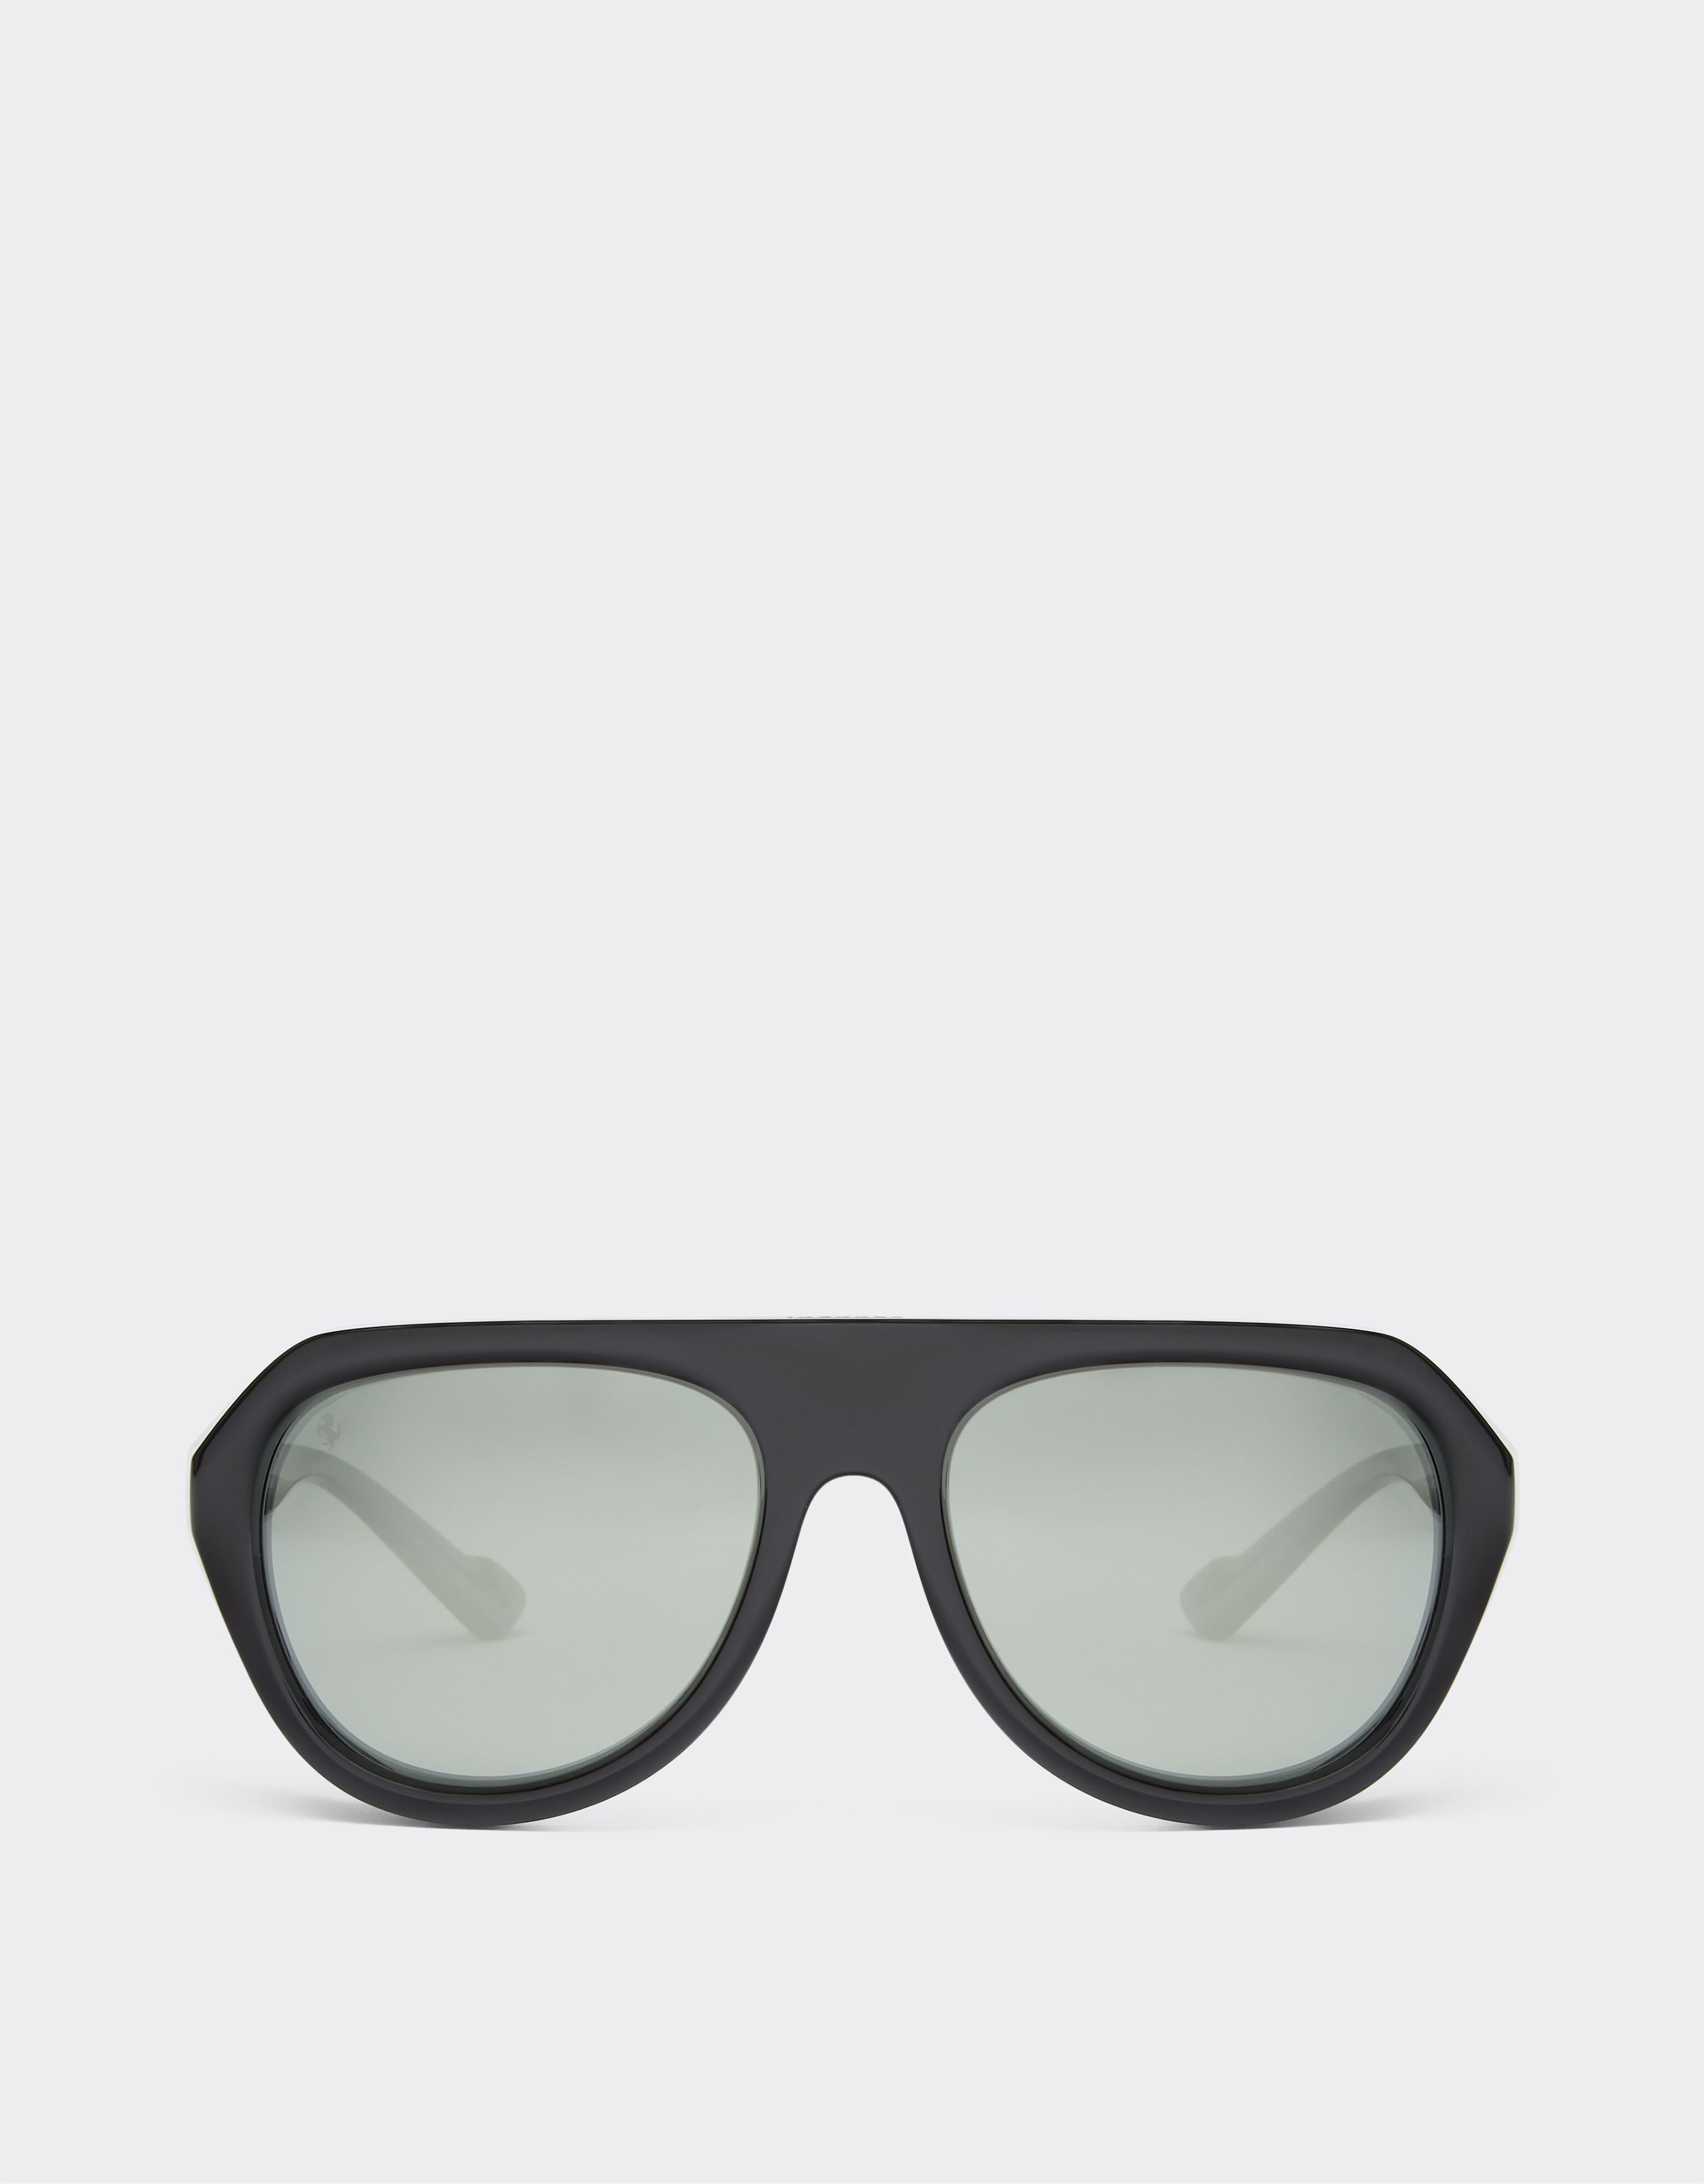 Ferrari Ferrari black sunglasses with leather details and polarised mirror lenses Black F1201f